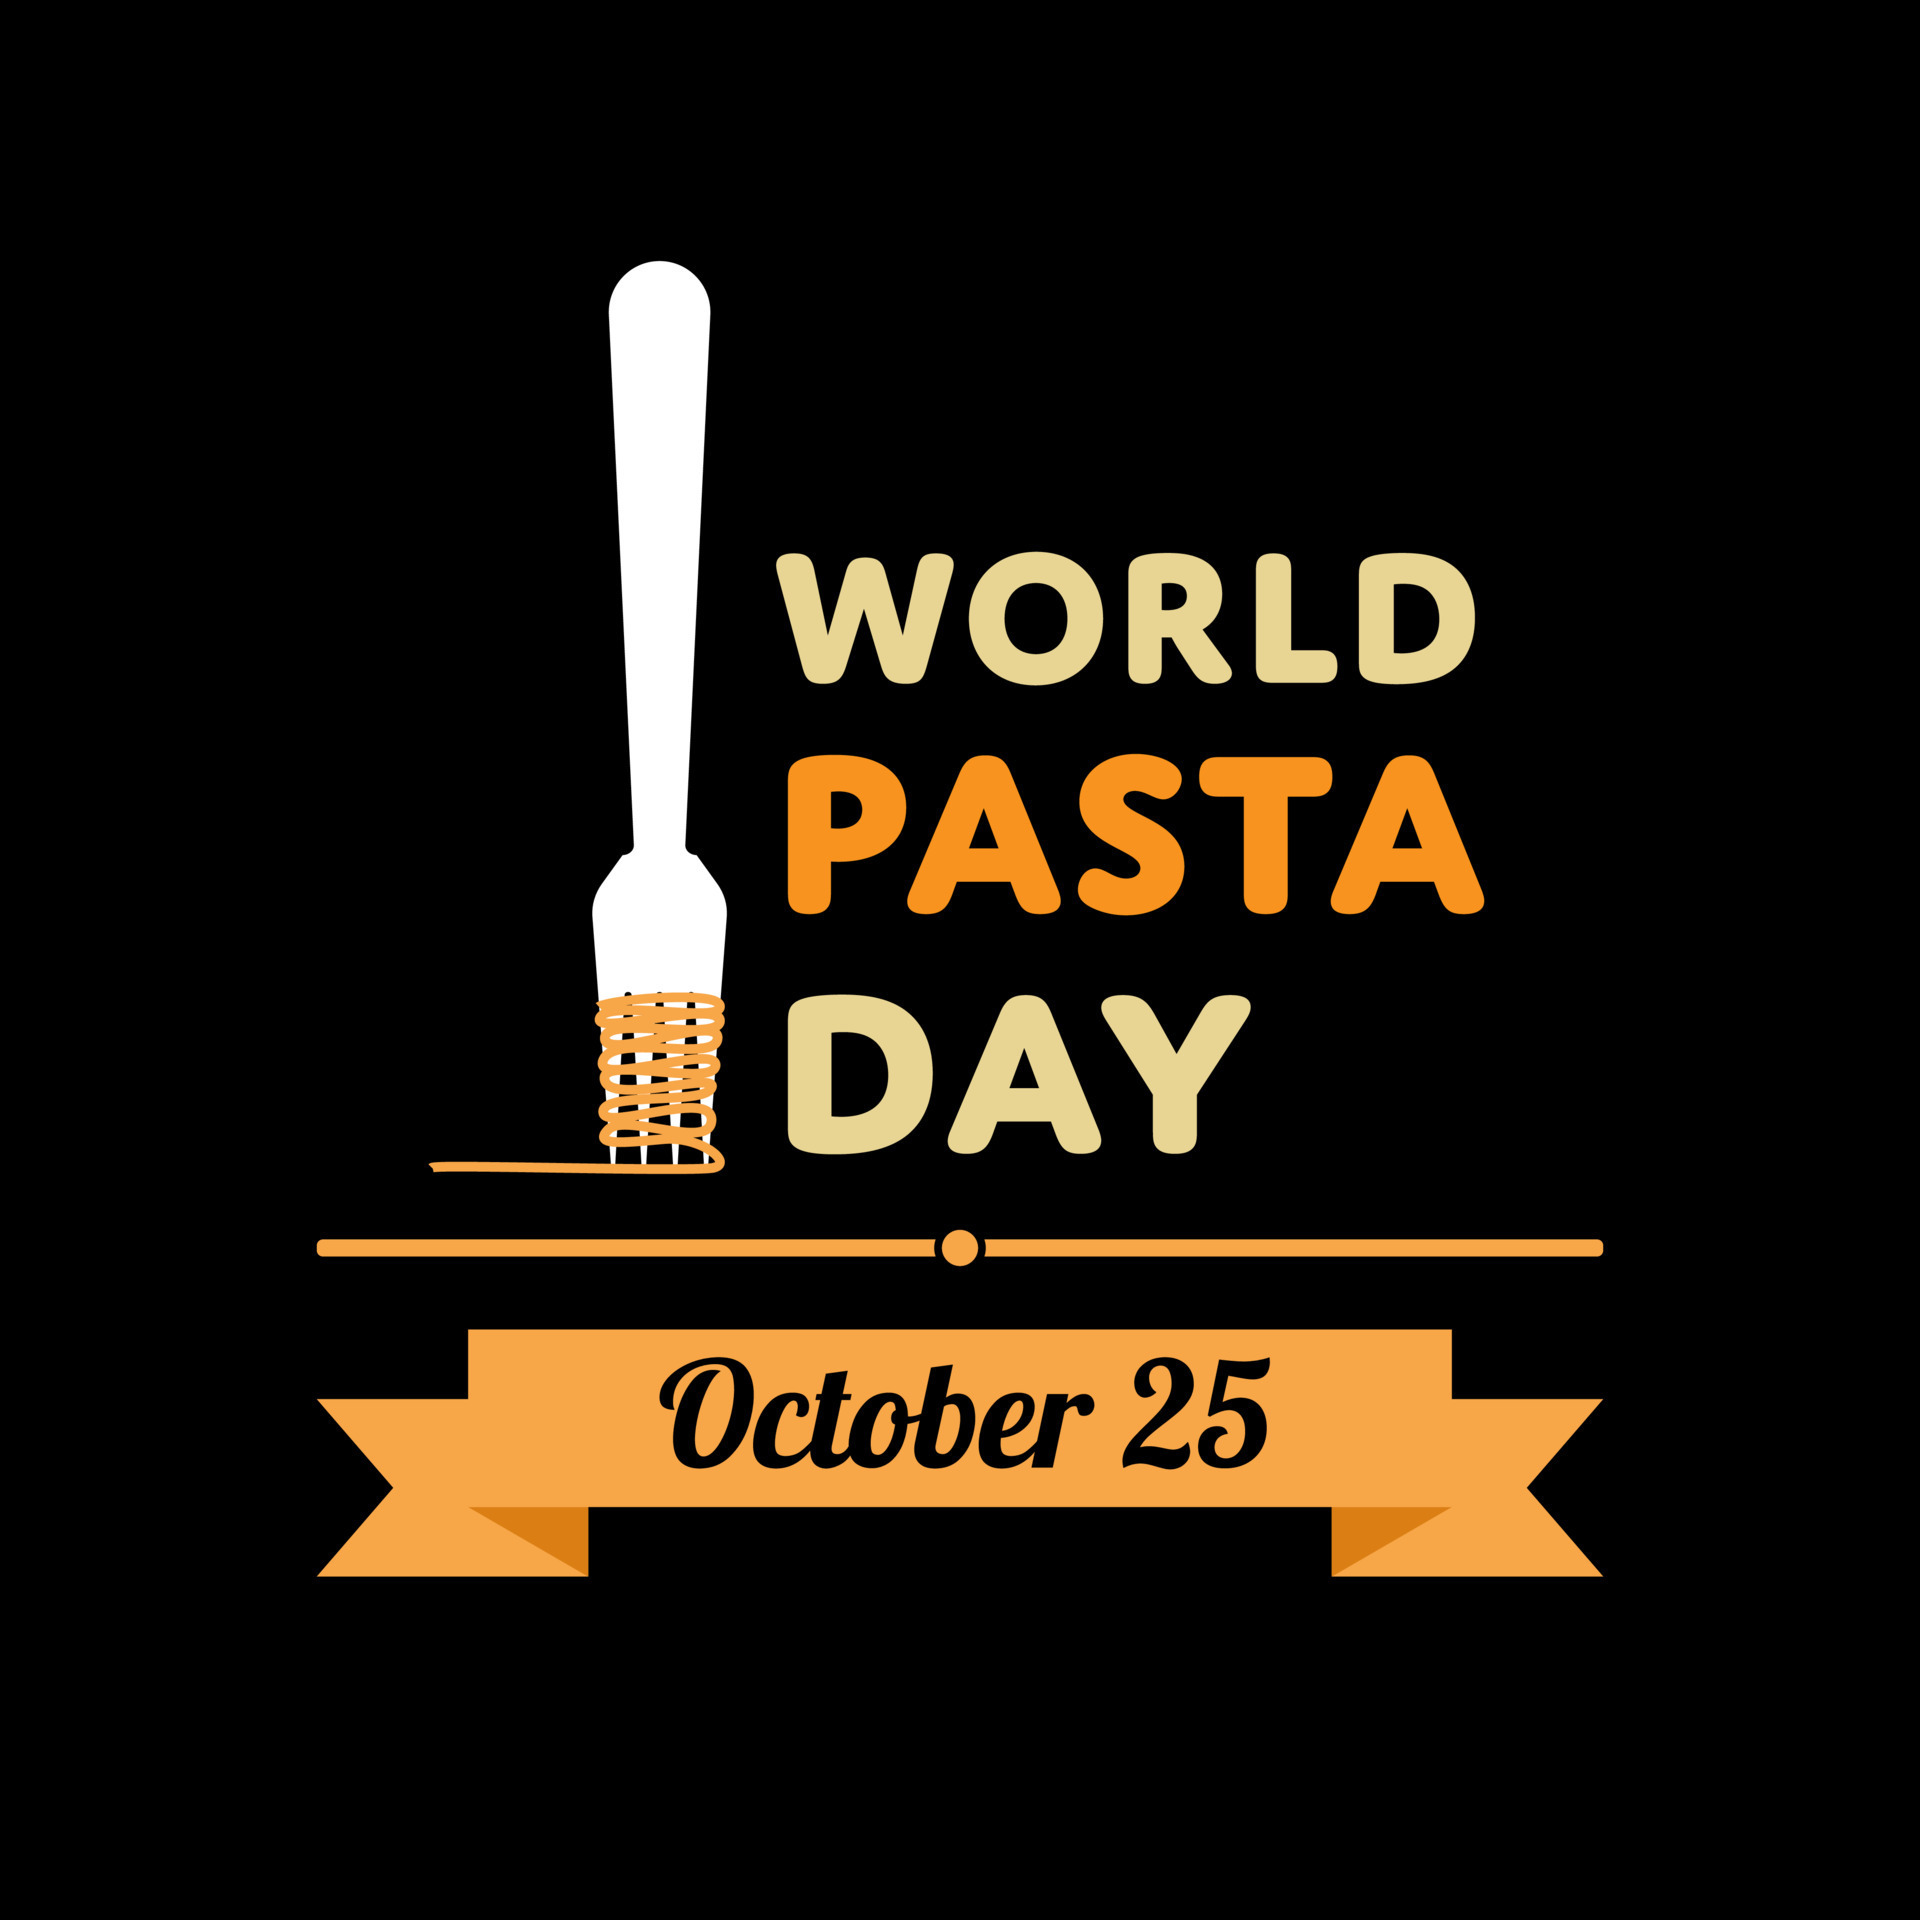 World pasta day. Pasta and fork logo design illustration for banner